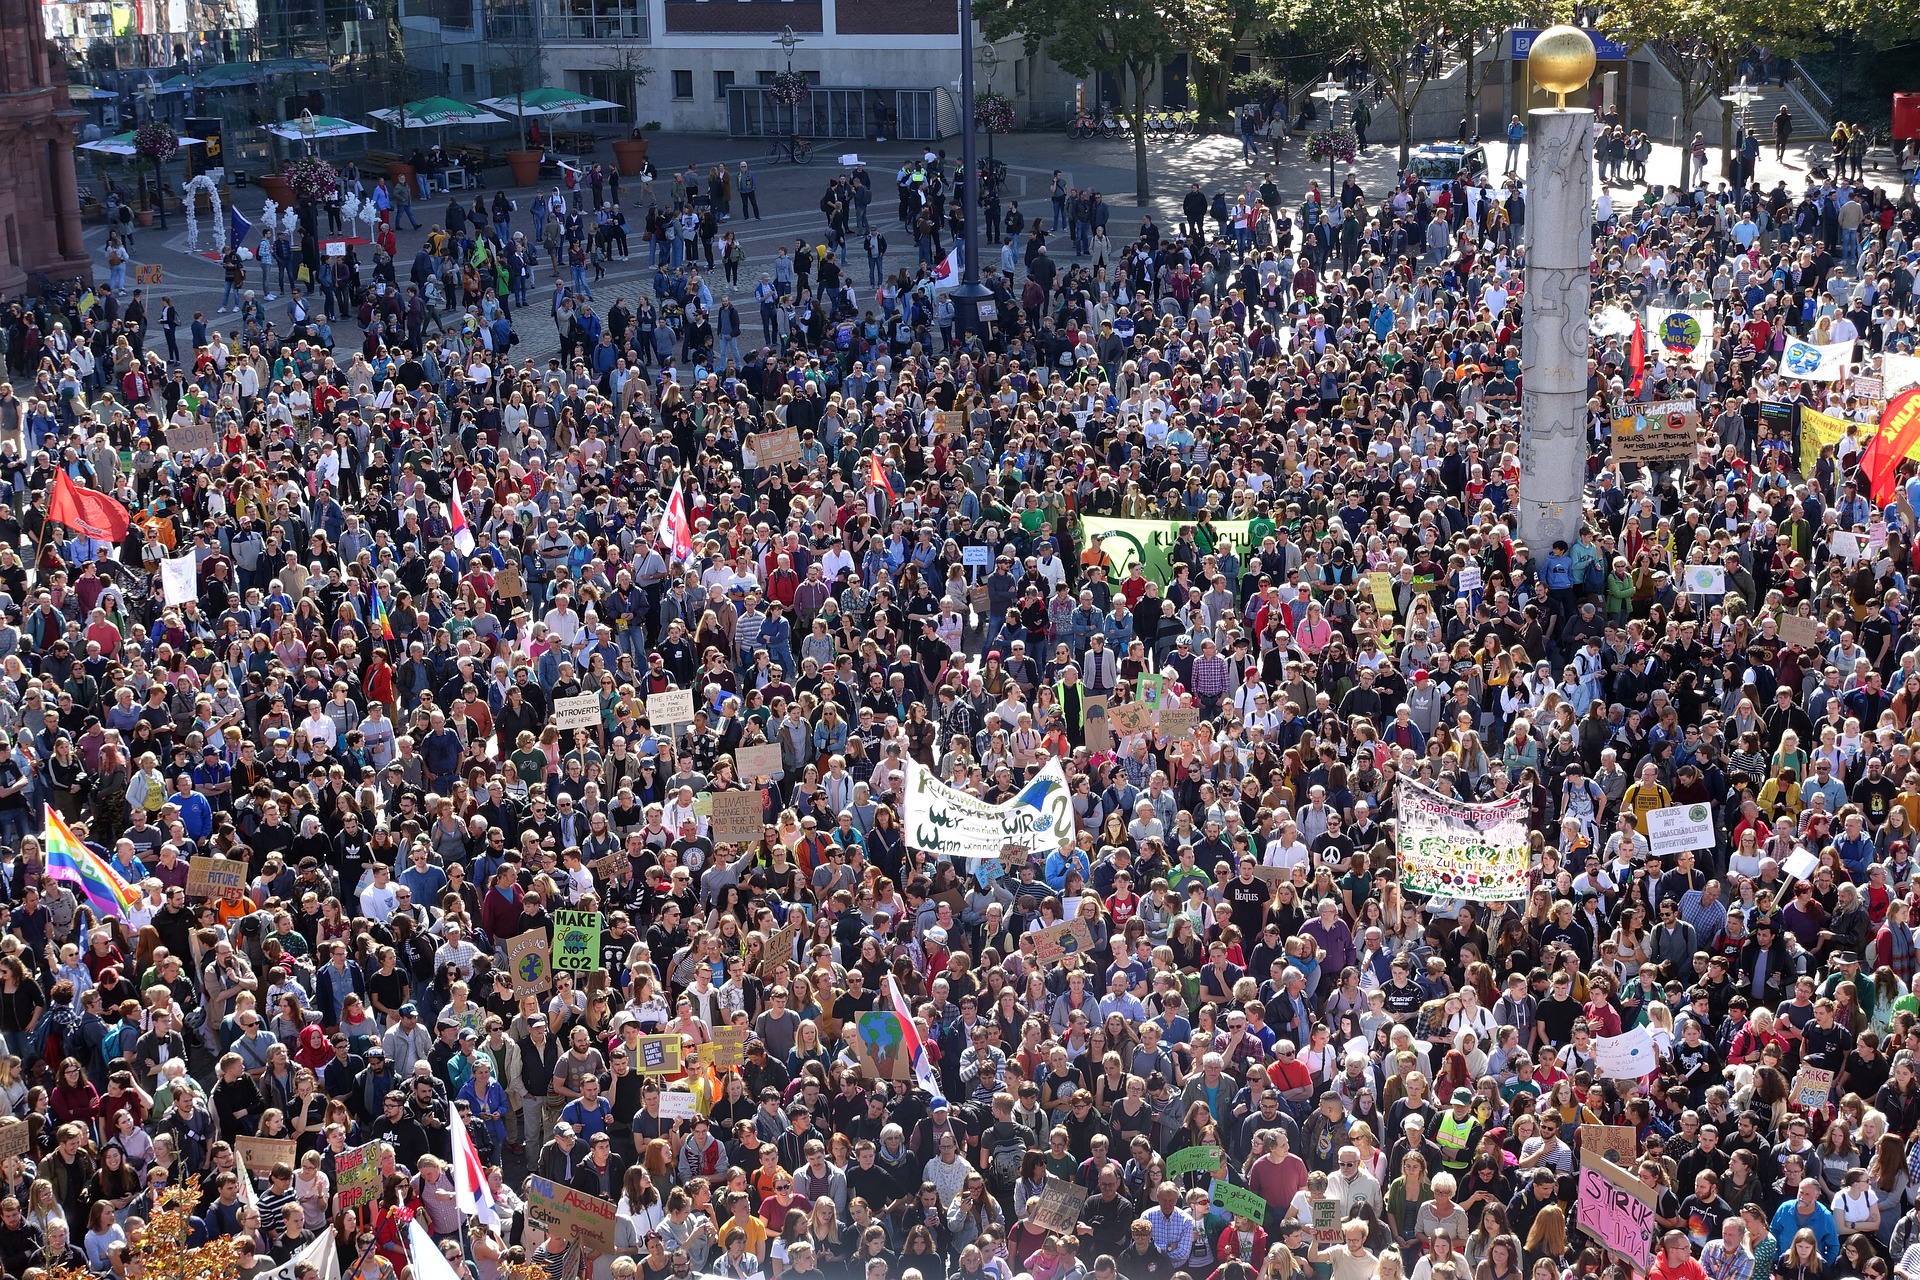 Klimawandel-Skeptiker:innen - Sehr viele Menschen demonstrieren für mehr Klimaschutz